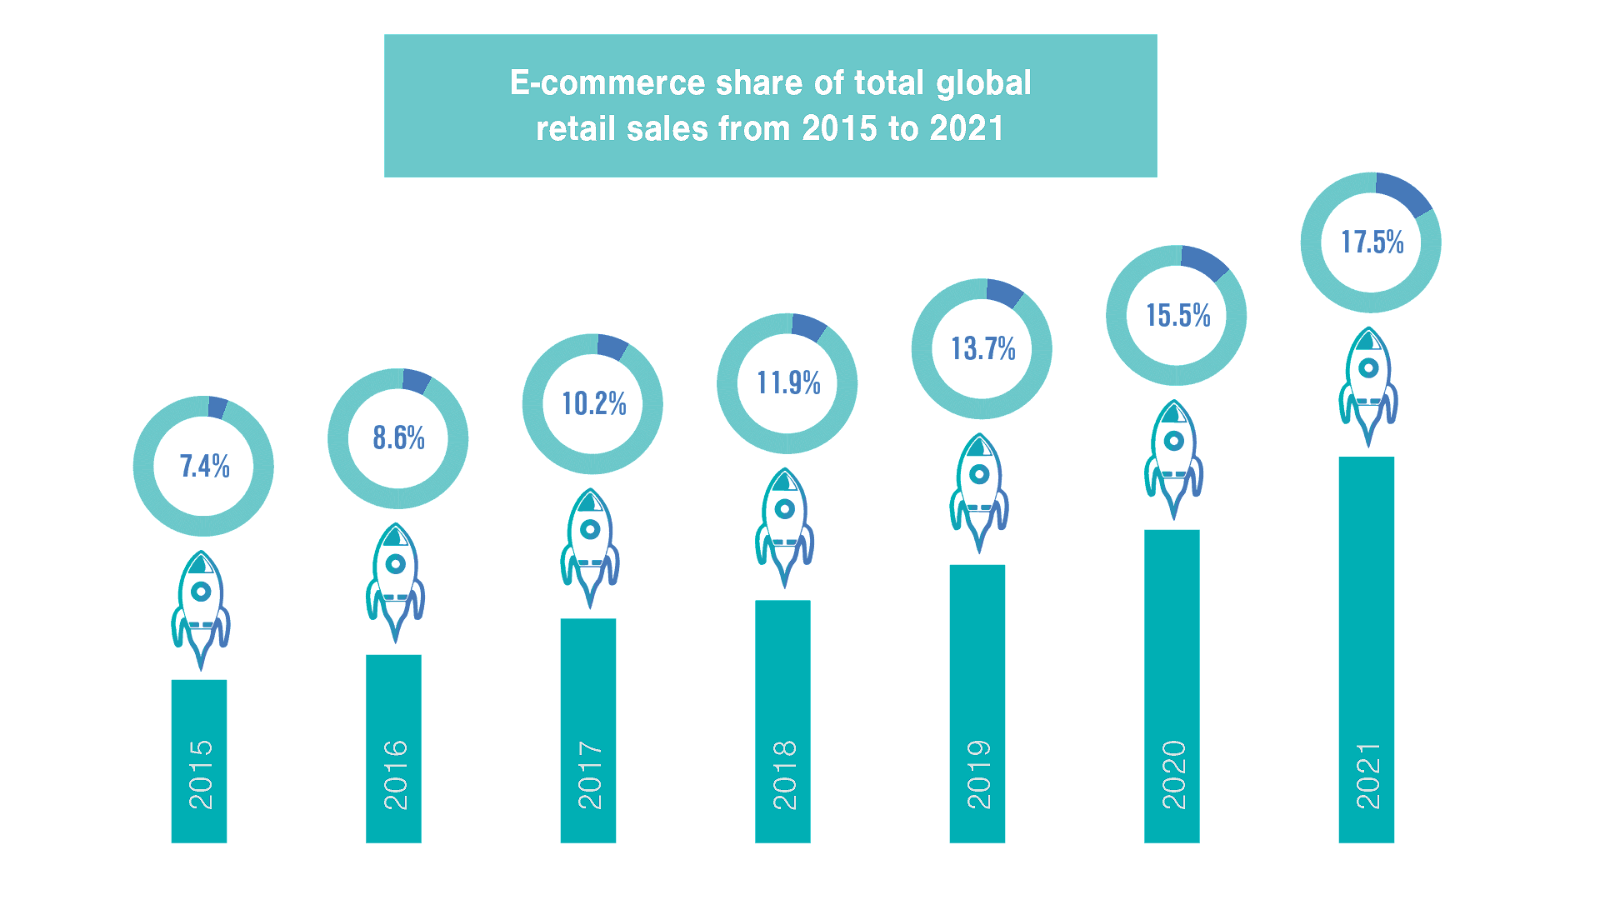 Part du commerce électronique dans le total des ventes au détail mondiales de 2015 à 2021